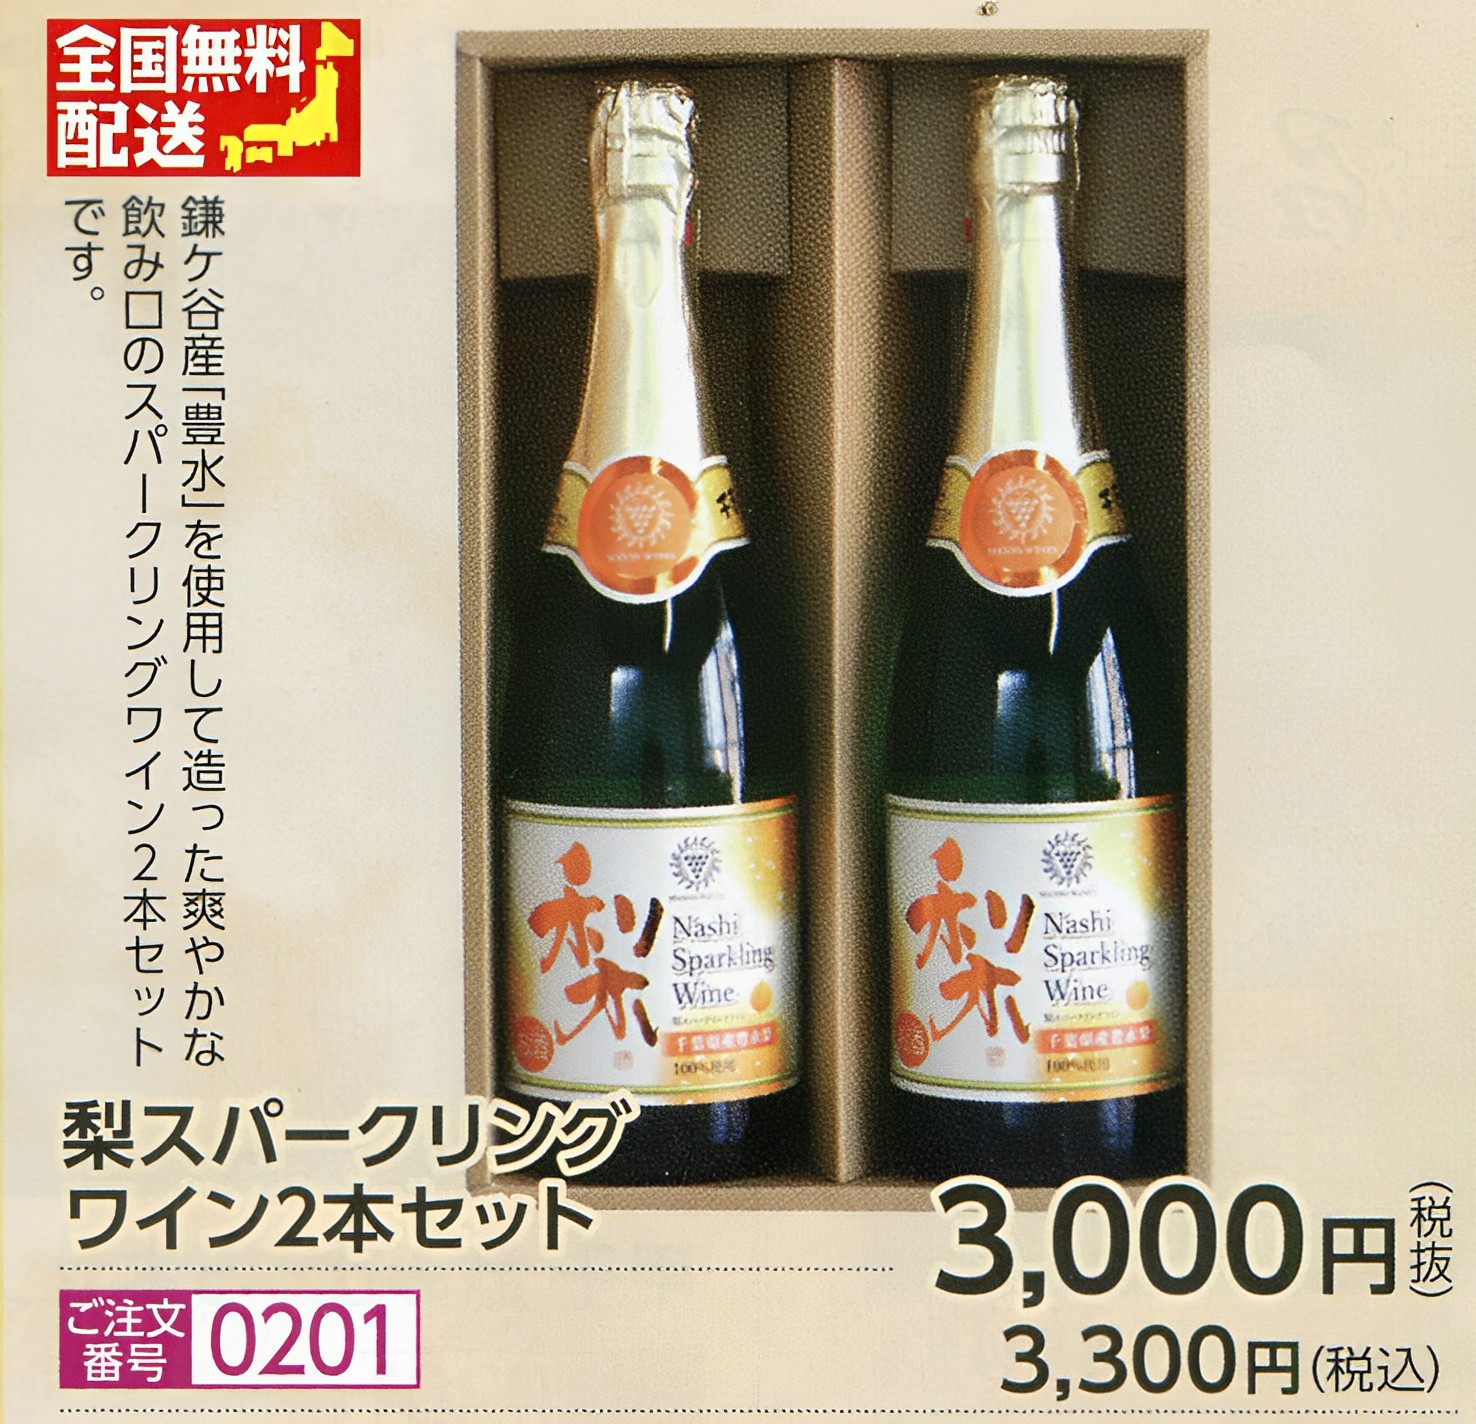 【全国送料無料】柚子スパークリングワイン 2本セット画像